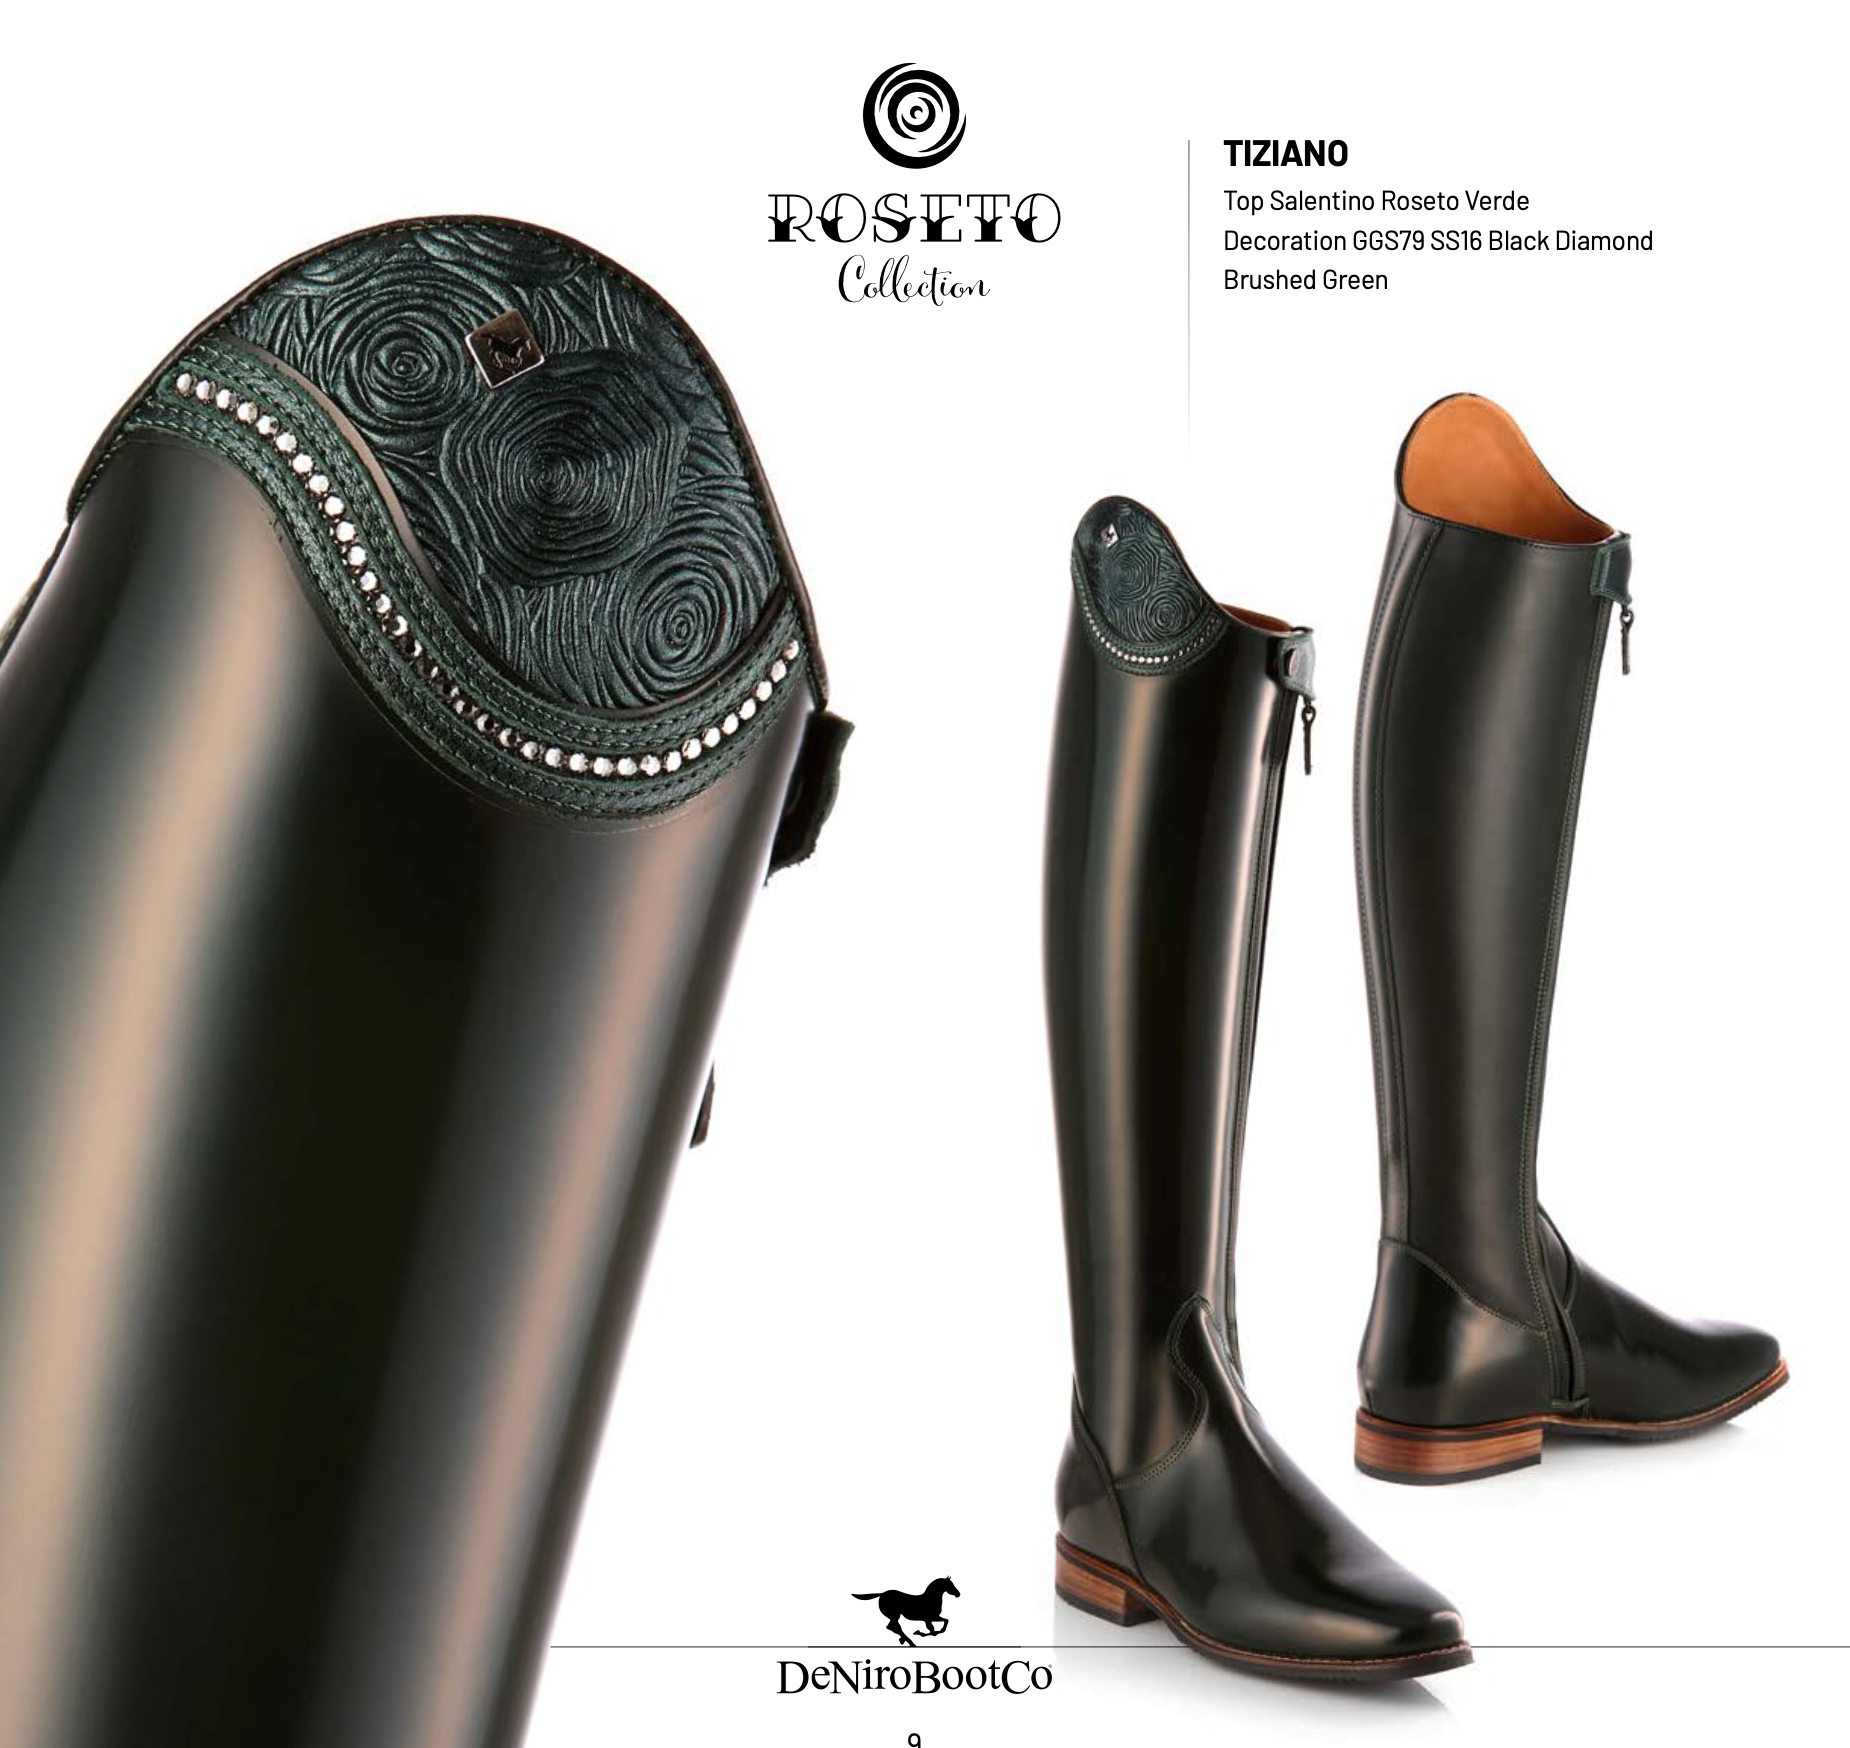 DeNiro Tiziano Dressage boot in stock SALE $350 off